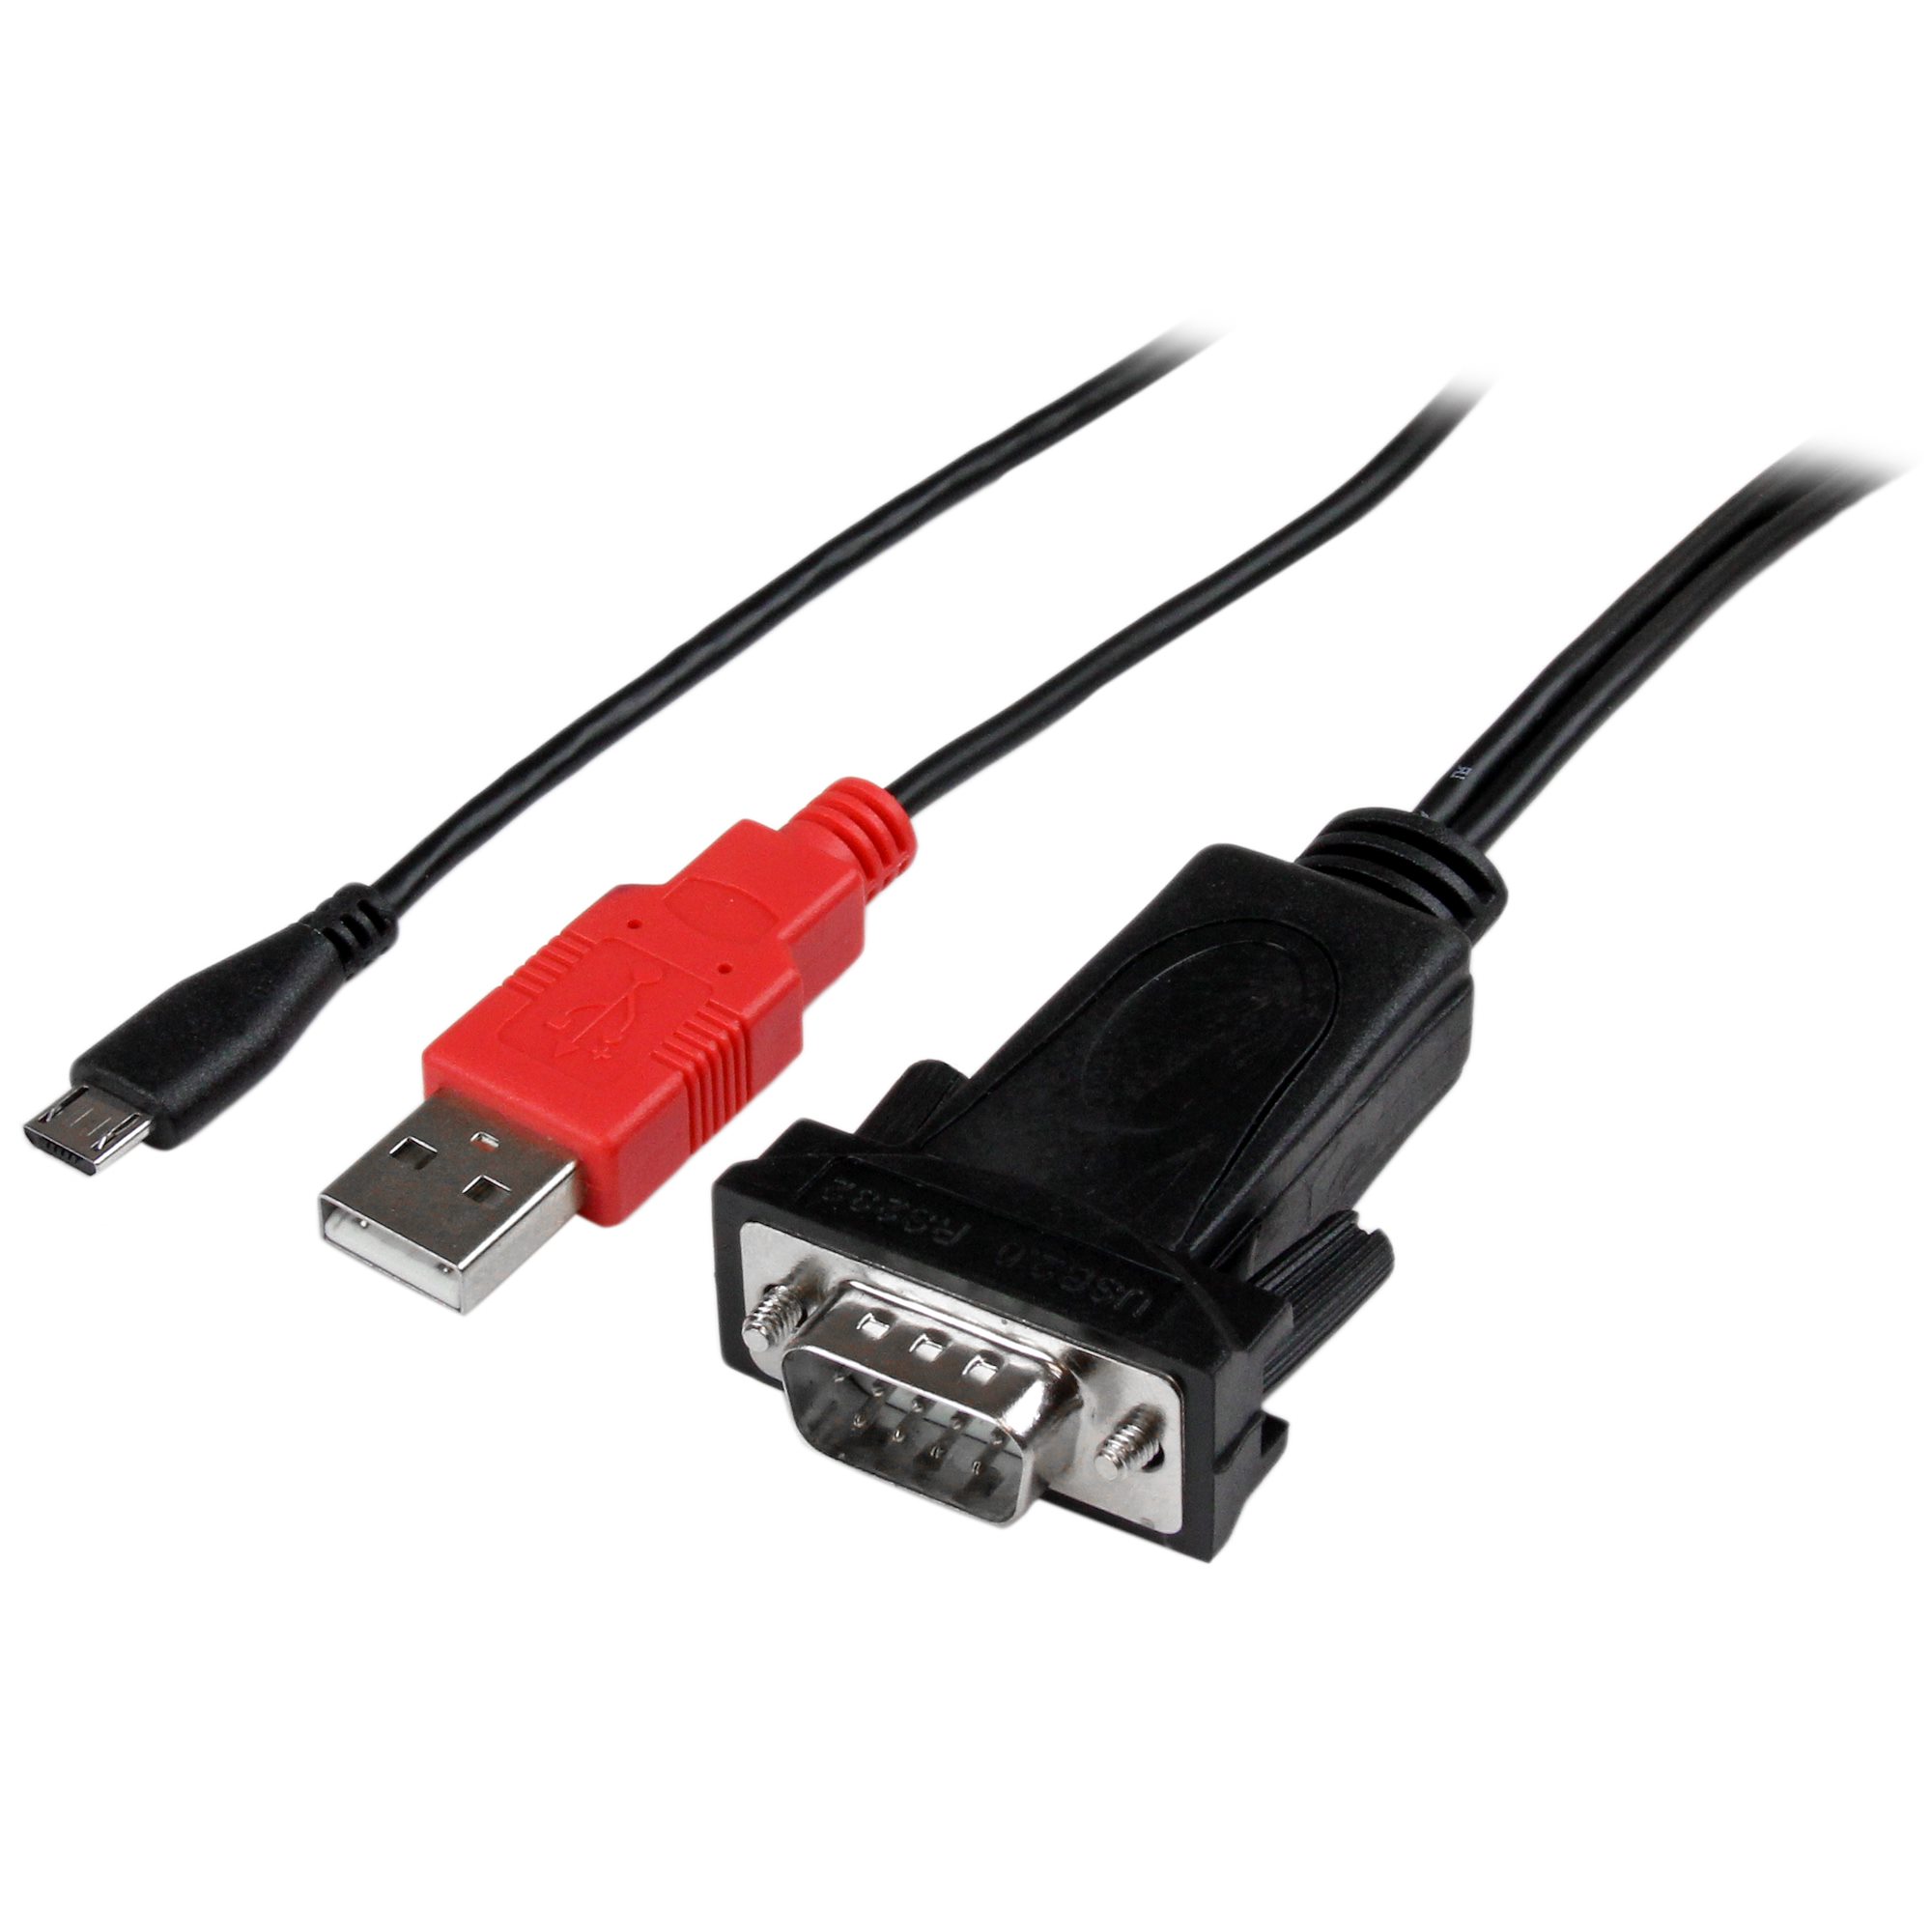 マイクロUSB - RS232C変換アダプタケーブル アンドロイド専用タブレット/スマートホン対応 USB給電機能付き